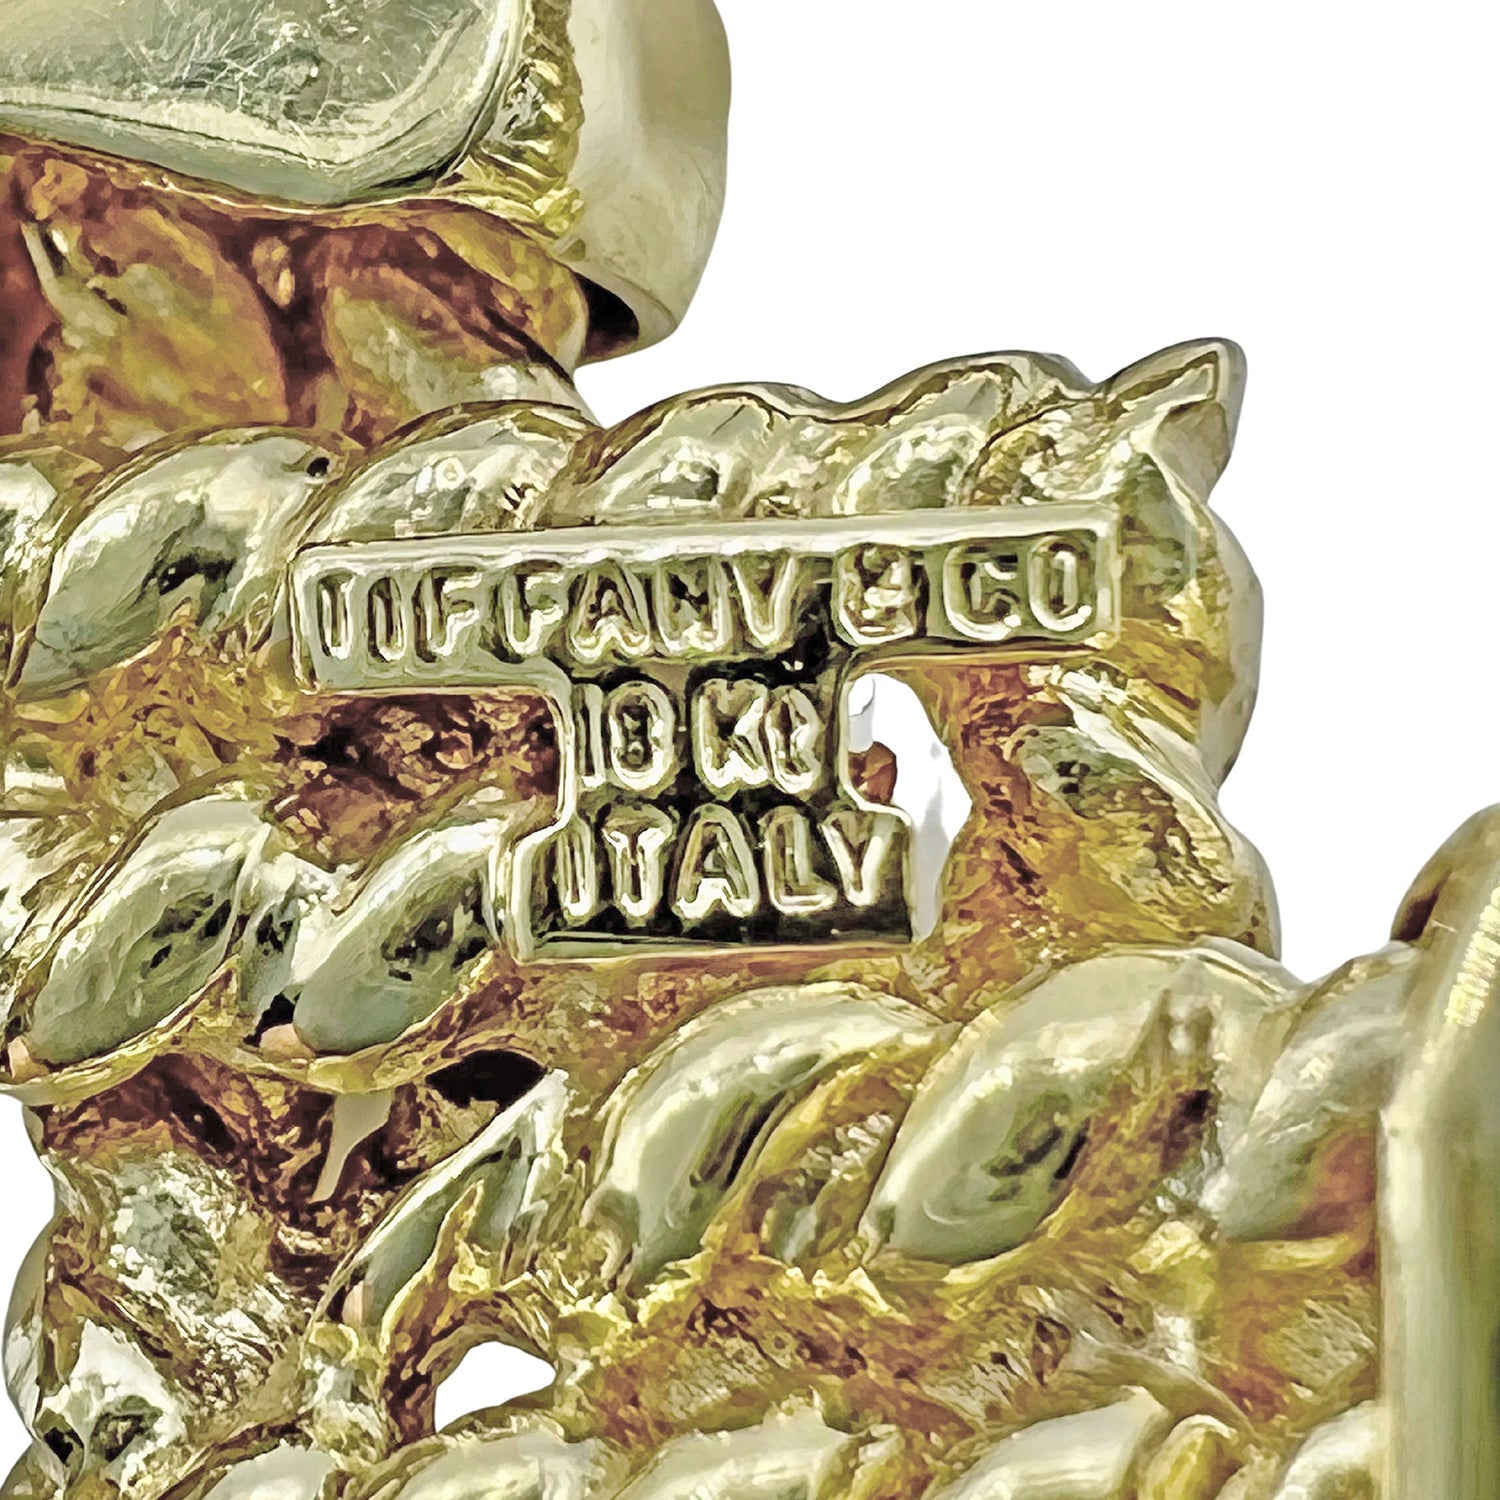 Tiffany & Co - 1970s 18k Yellow Gold Geometric Wide 'X' Bracelet